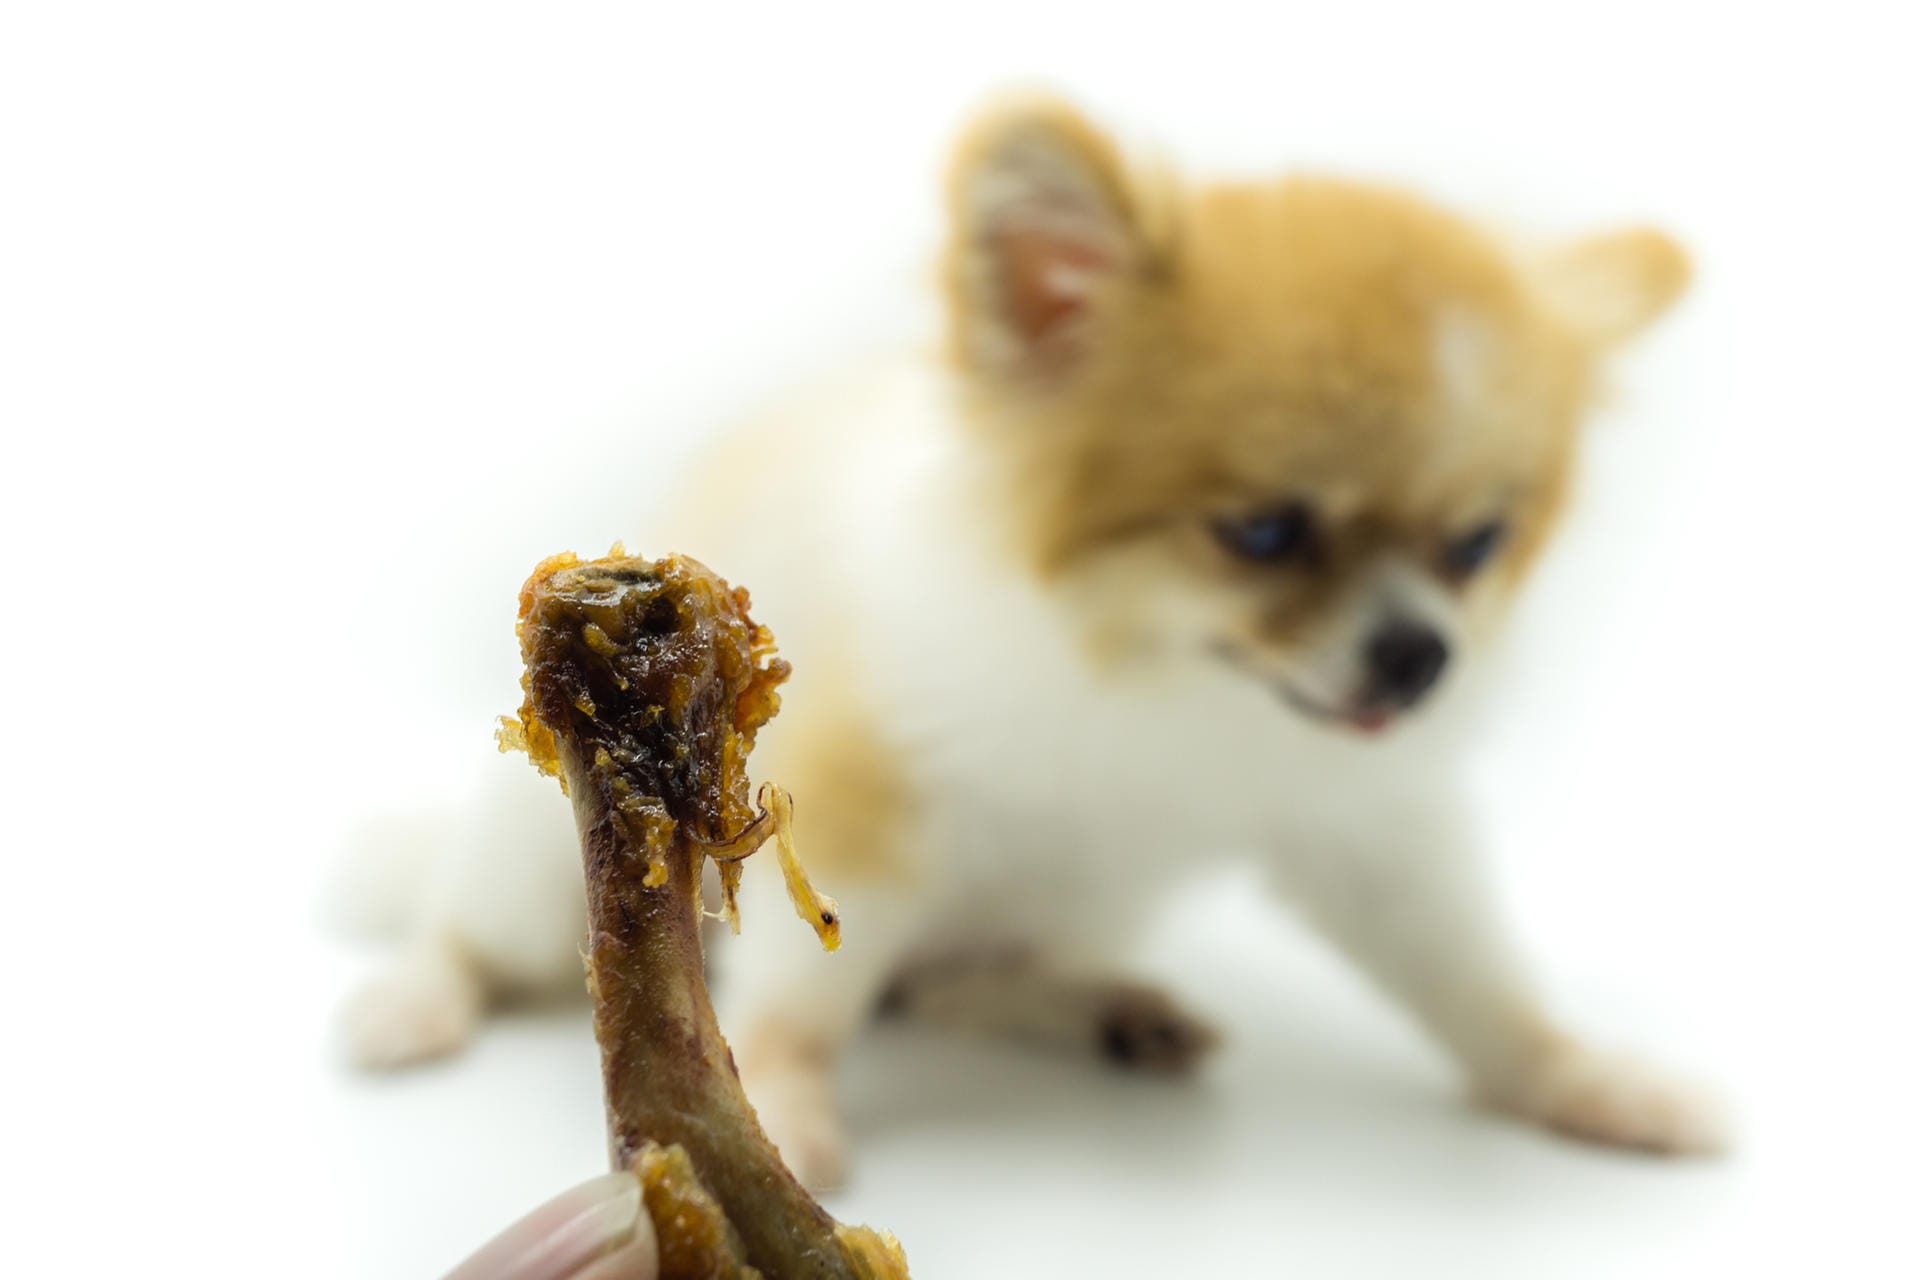 Keine Hühnerknochen für Hunde: Hohle Knochen in gekochtem Zustand wie Hühnerknochen sind für Hunde besonders gefährlich. Sie können leicht splittern und das Tier beim Verschlucken verletzen.